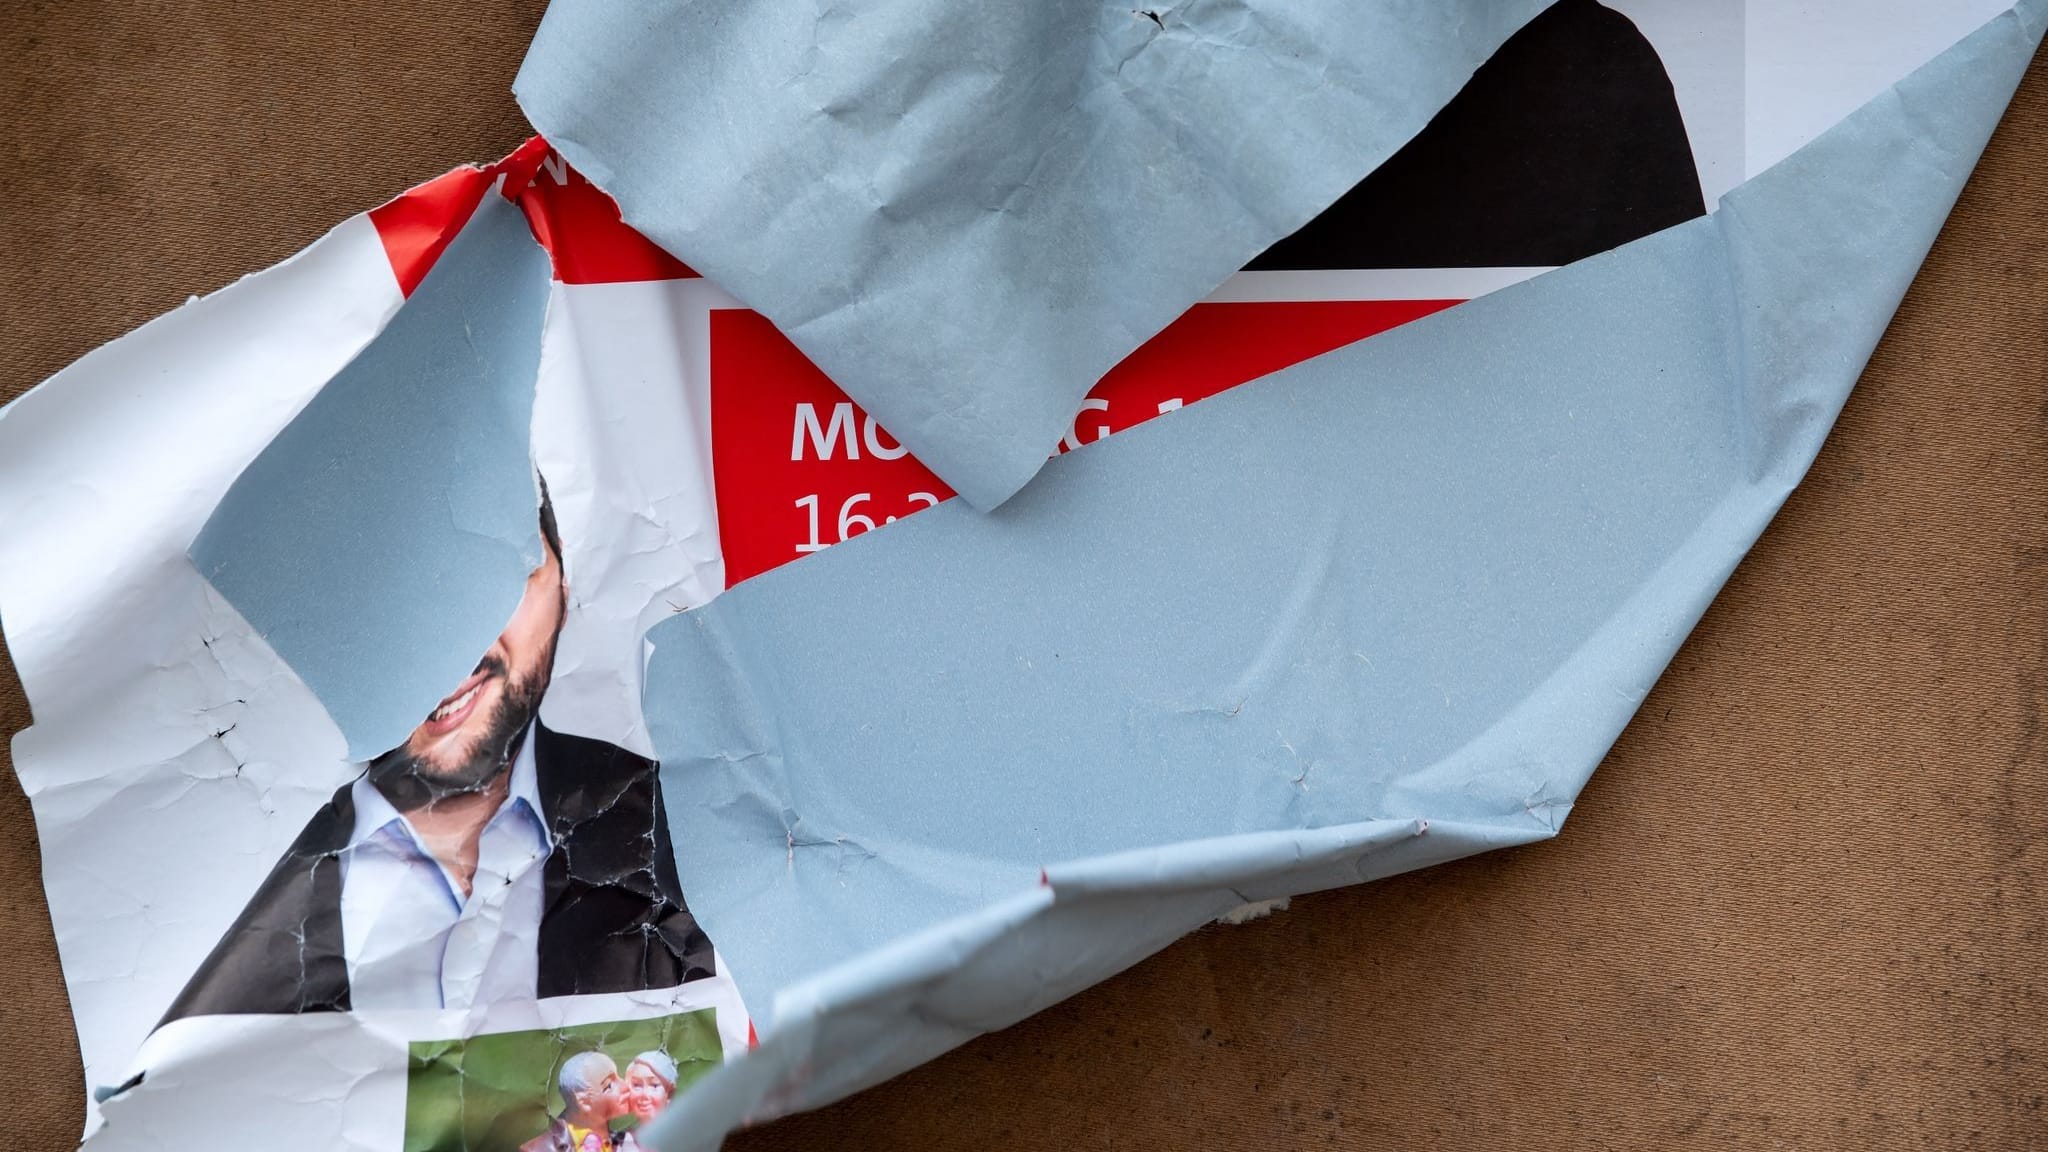 Wahlplakat mit Rasierklinge manipuliert: SPD-Politiker im Hamburg verletzt